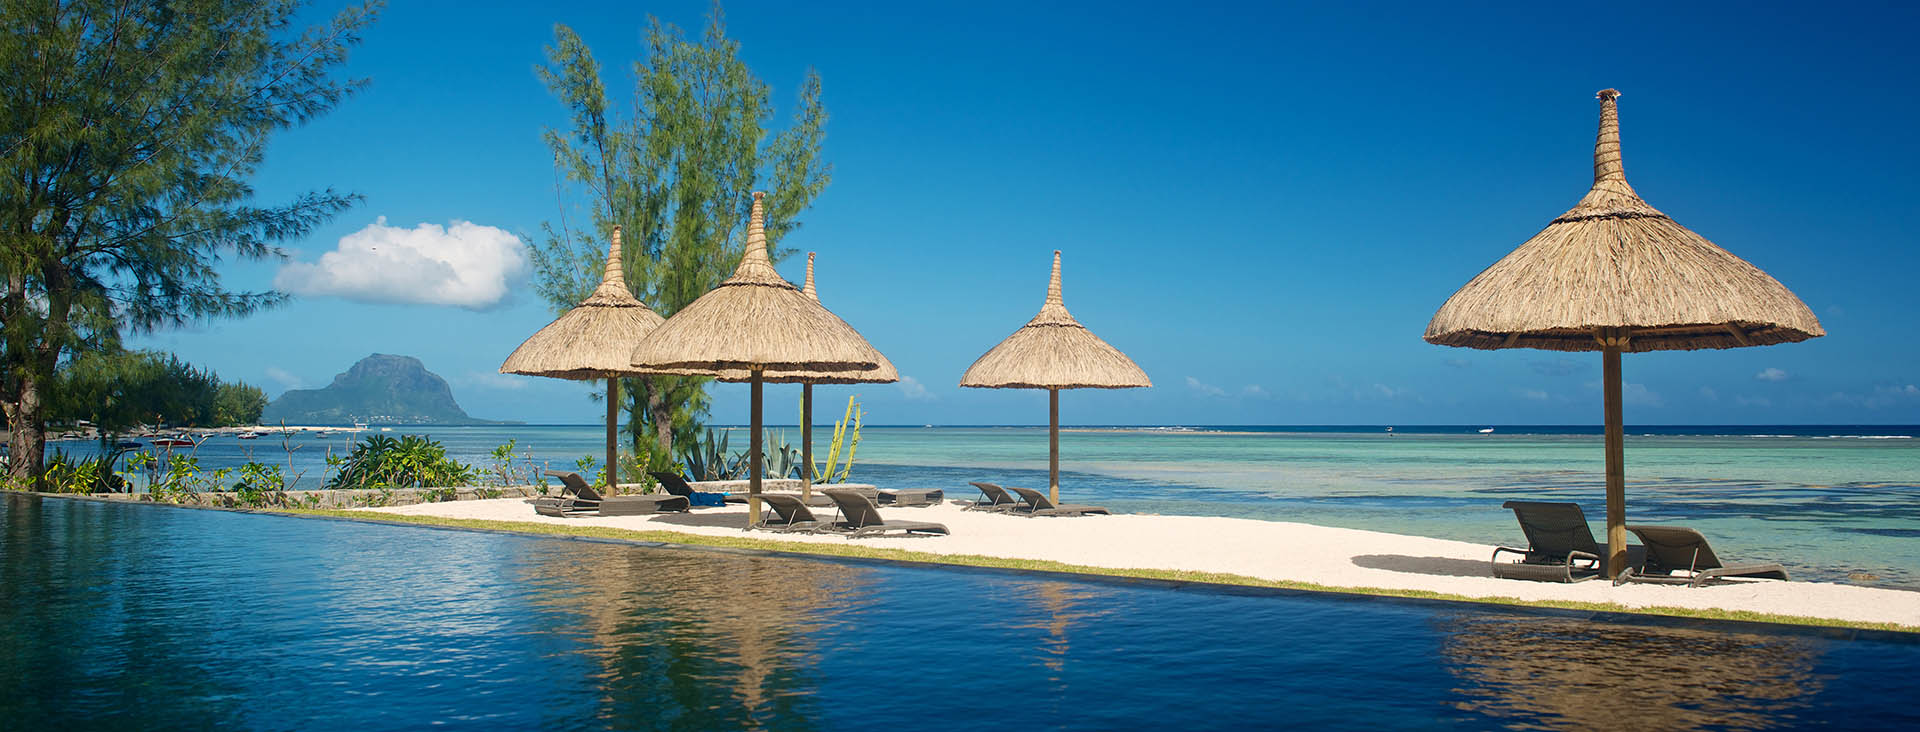 Premium beach villas Mauritius